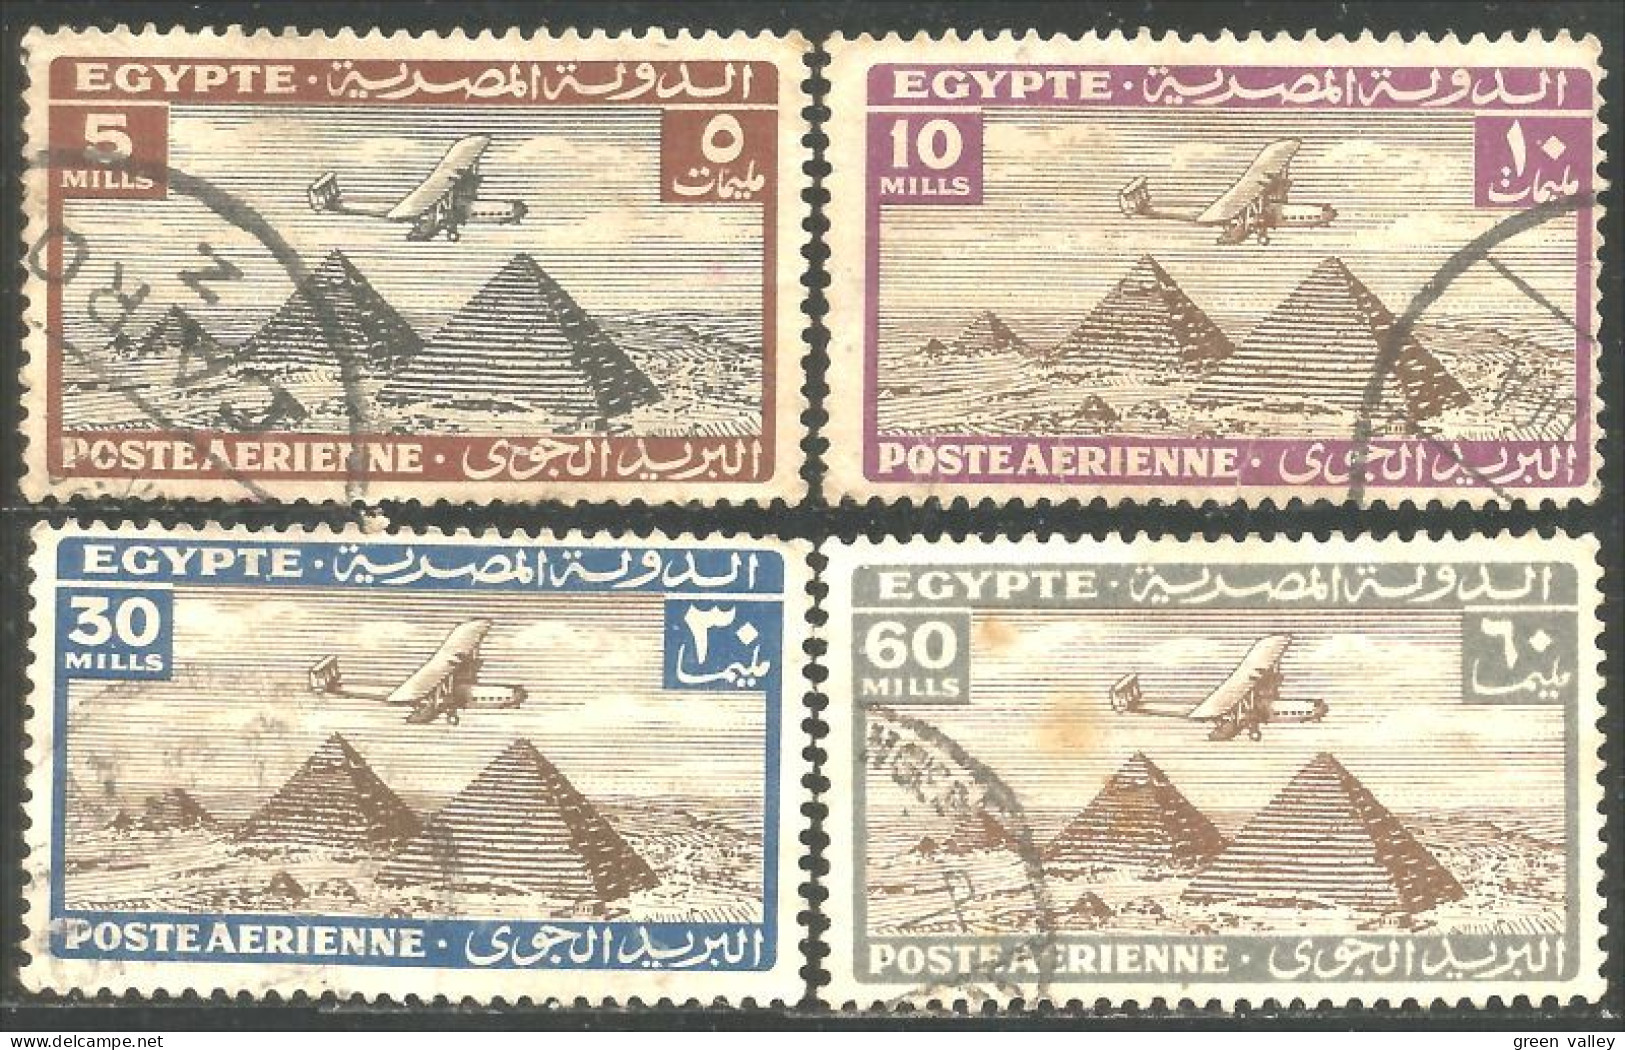 316 Egypte Avion Douglas DC-3 Airplane Flugzeug Pyramides Gizeh Giza Pyramids (EGY-172) - Luftpost